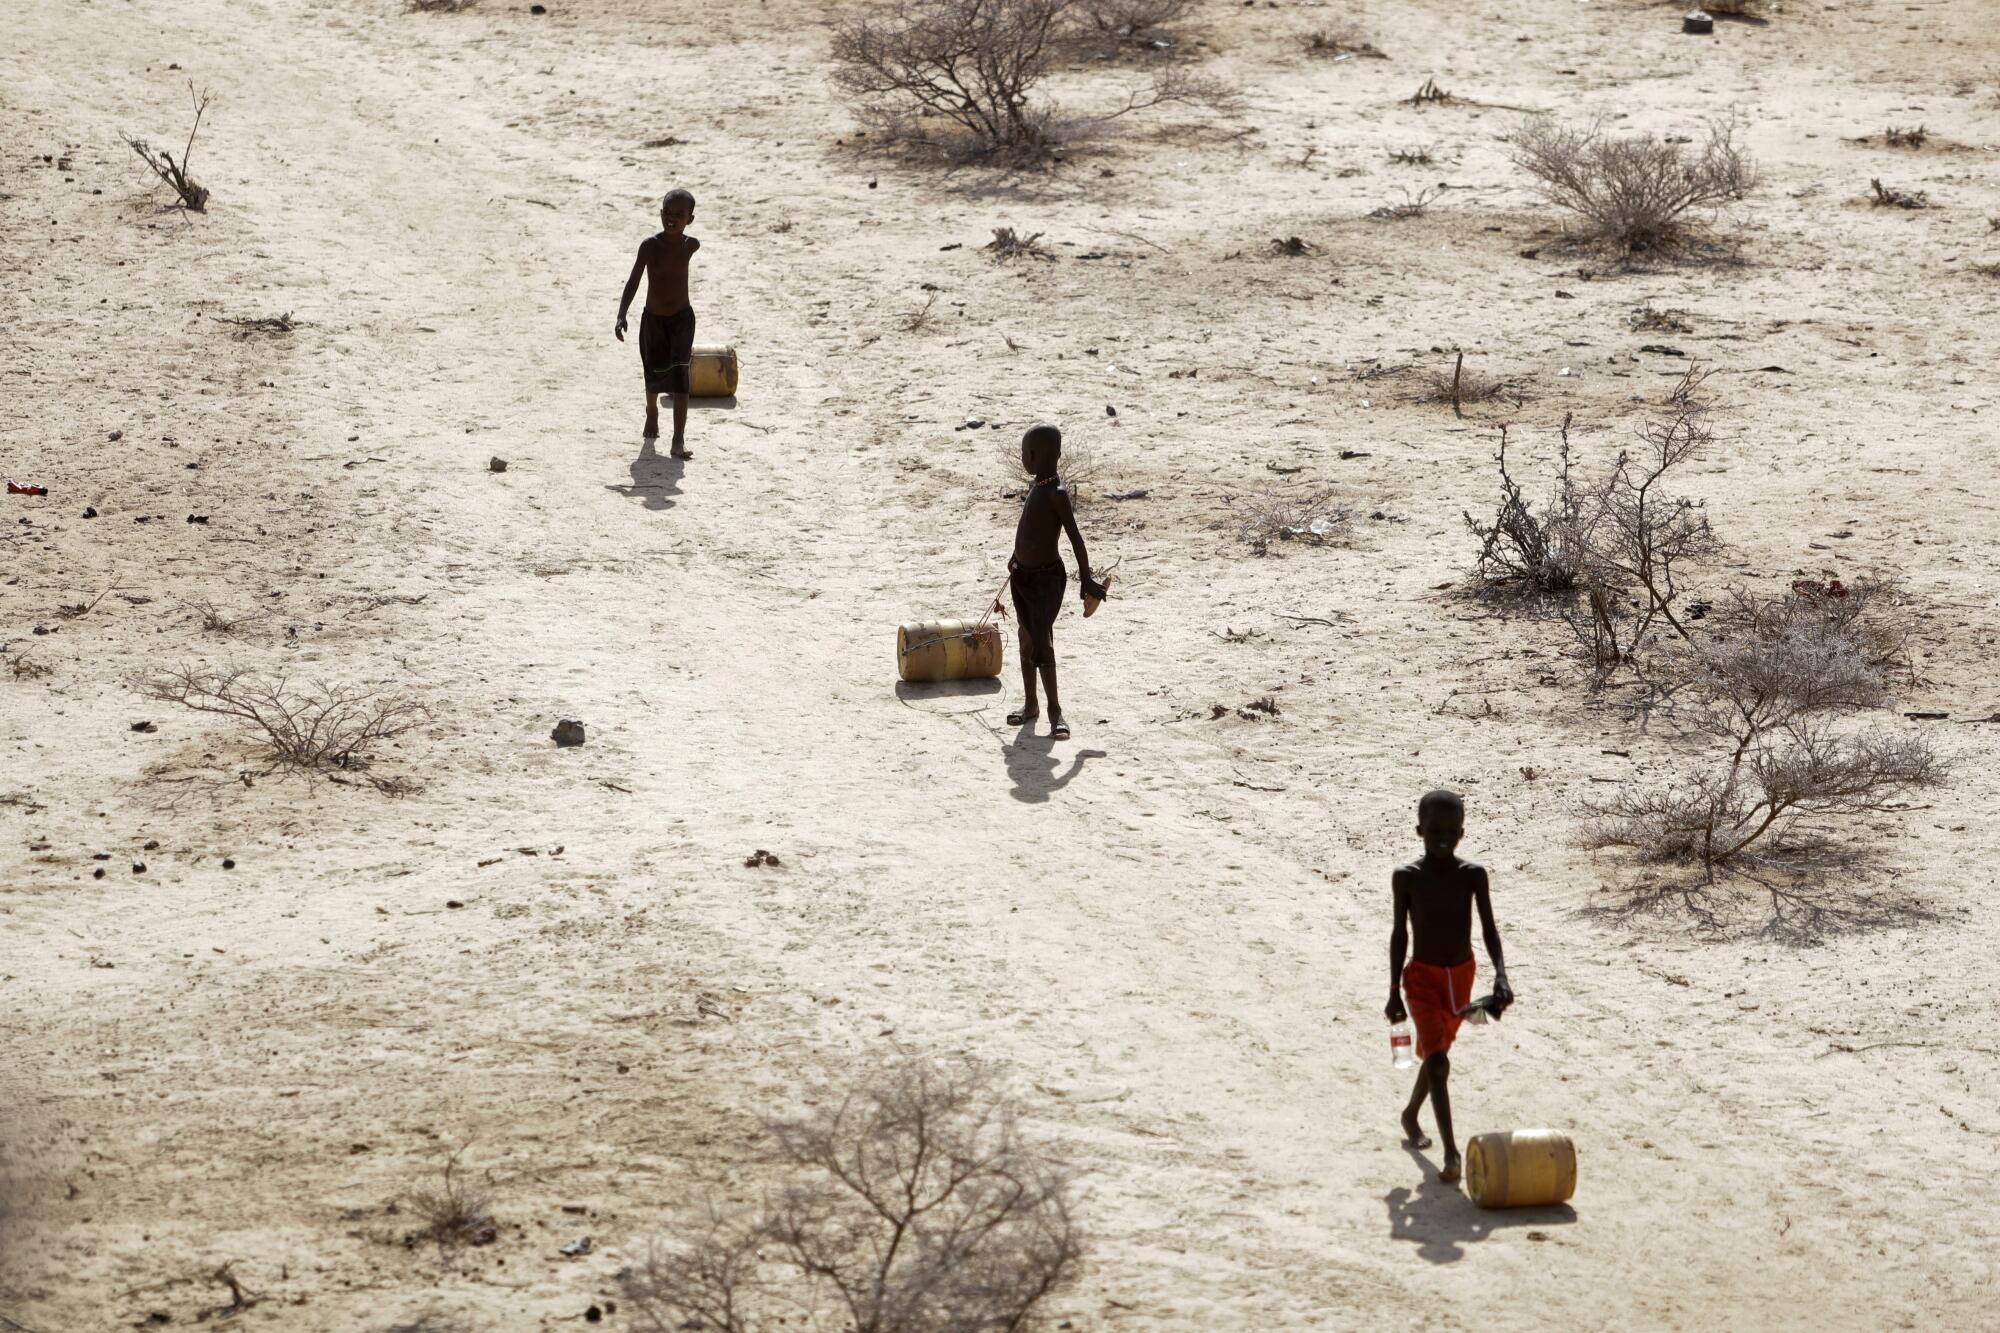 Jungen ziehen mit Wasser gefüllte Behälter über einen staubigen Weg.